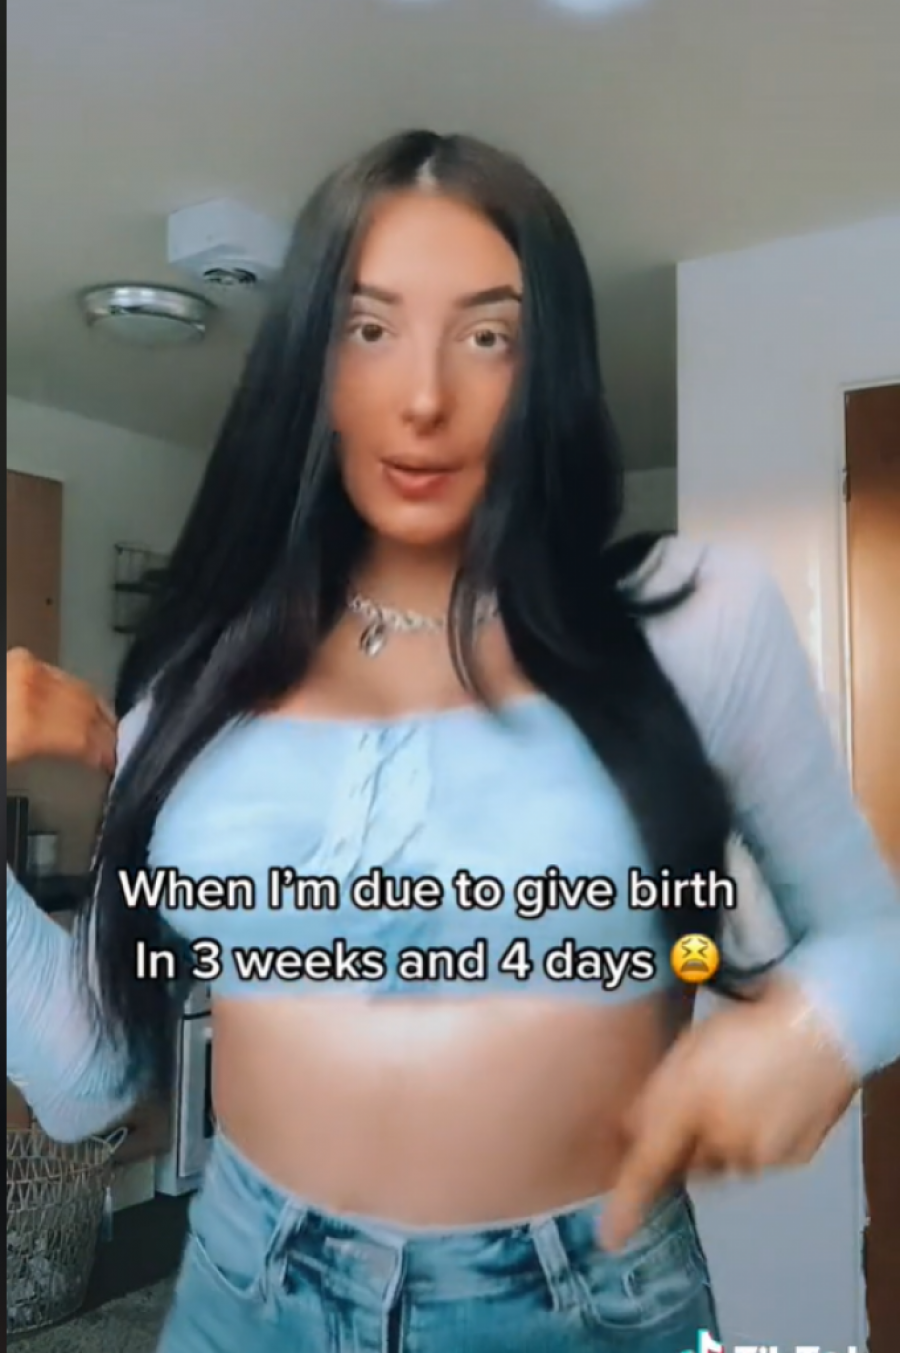 Da li je ovo trudnički stomak? Žena bi trebalo uskoro da se PORODI, a niko joj ne veruje da je u drugom stanju (FOTO, VIDEO)!